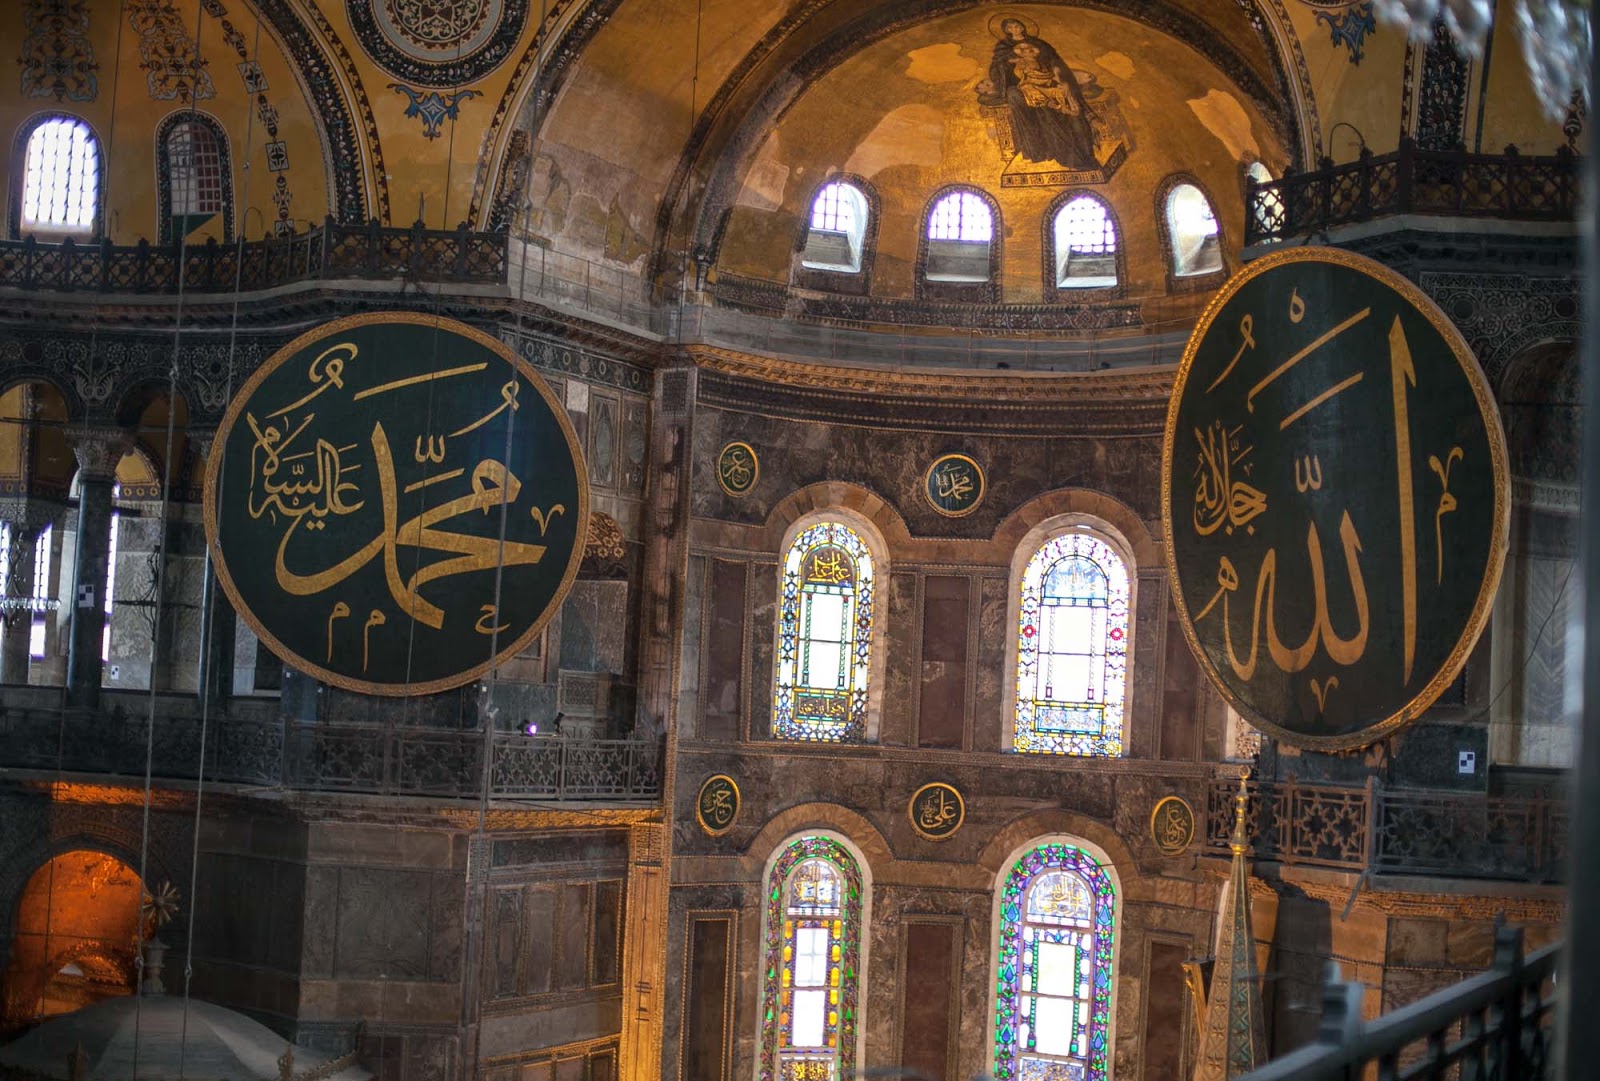 Hand-painted signage inside Hagia Sophia